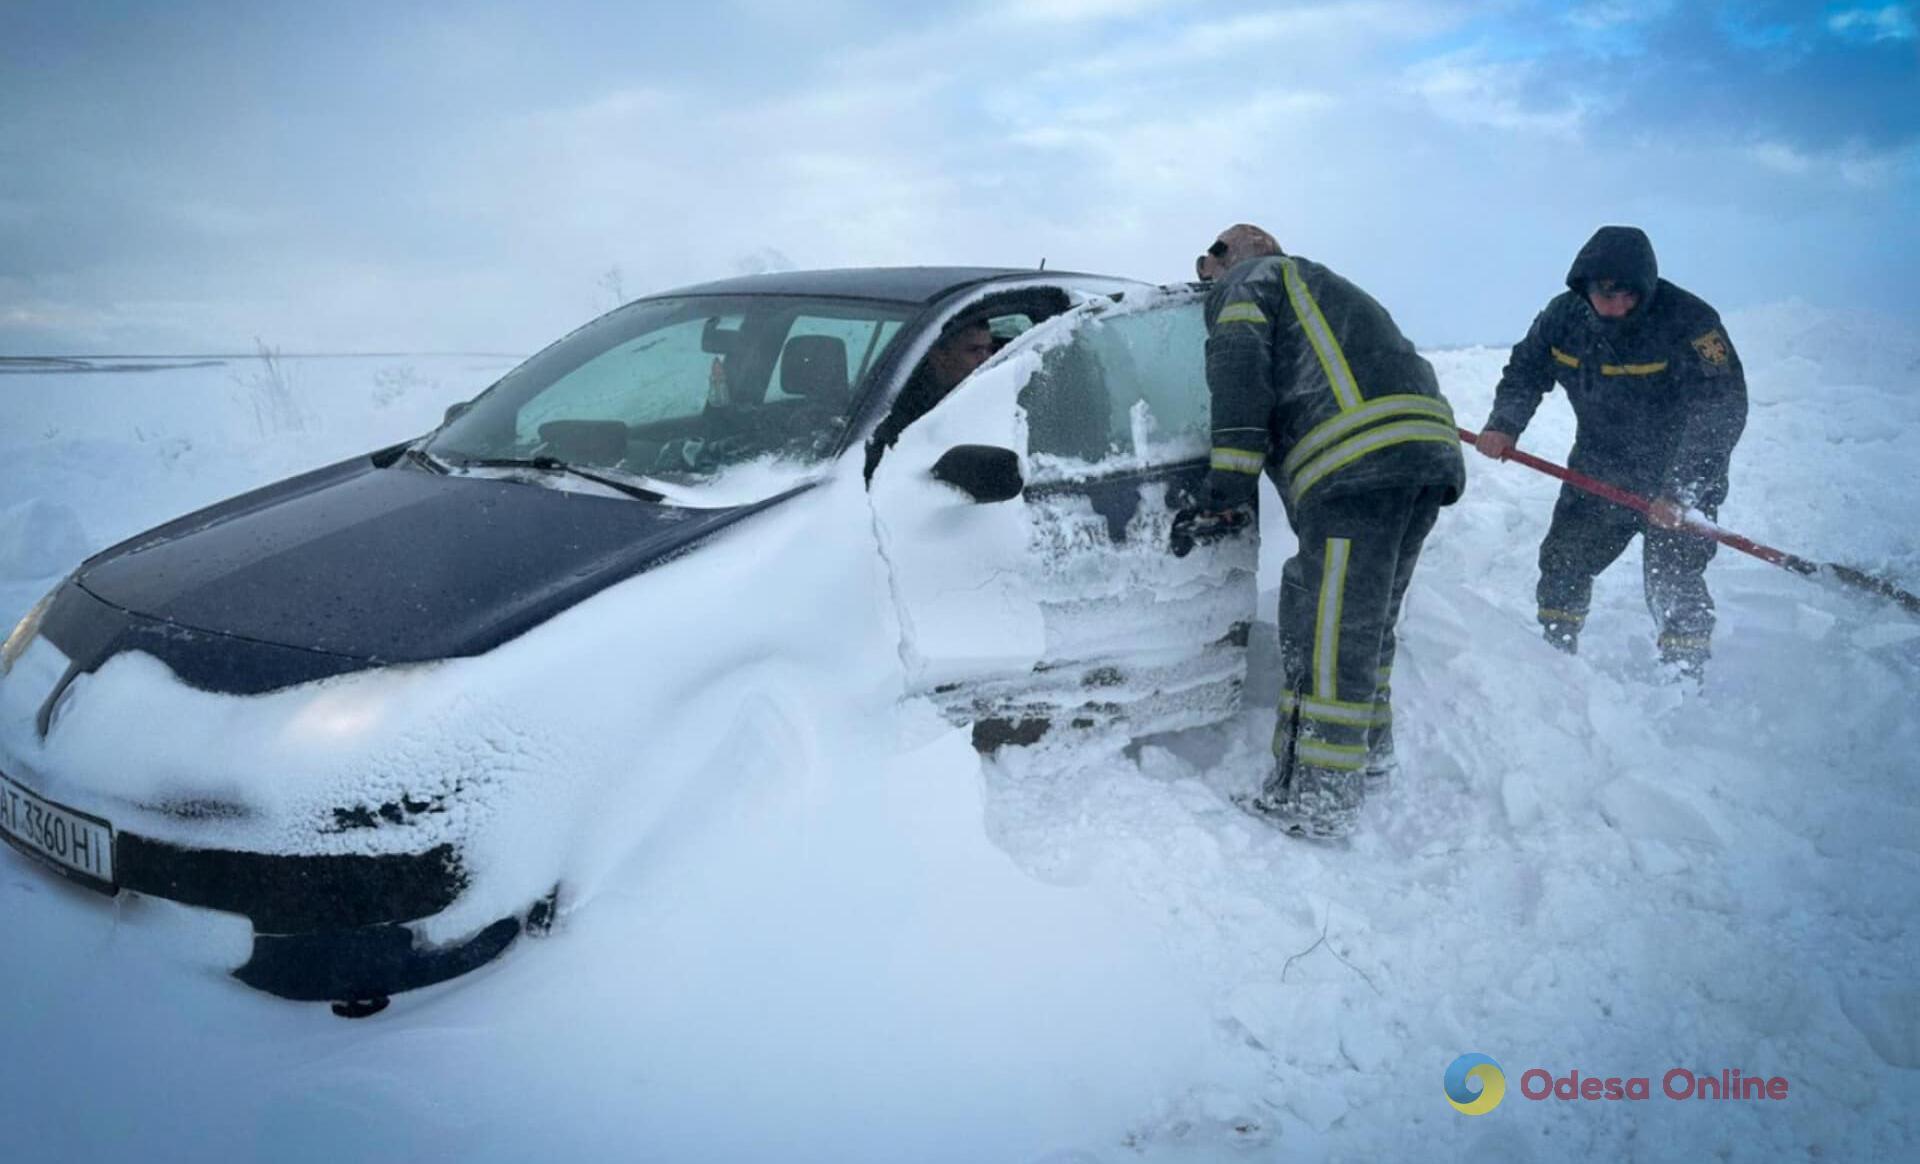 Одесская область: спасатели вытащили весь транспорт и освободили 2,5 тыс. человек из снежных ловушек